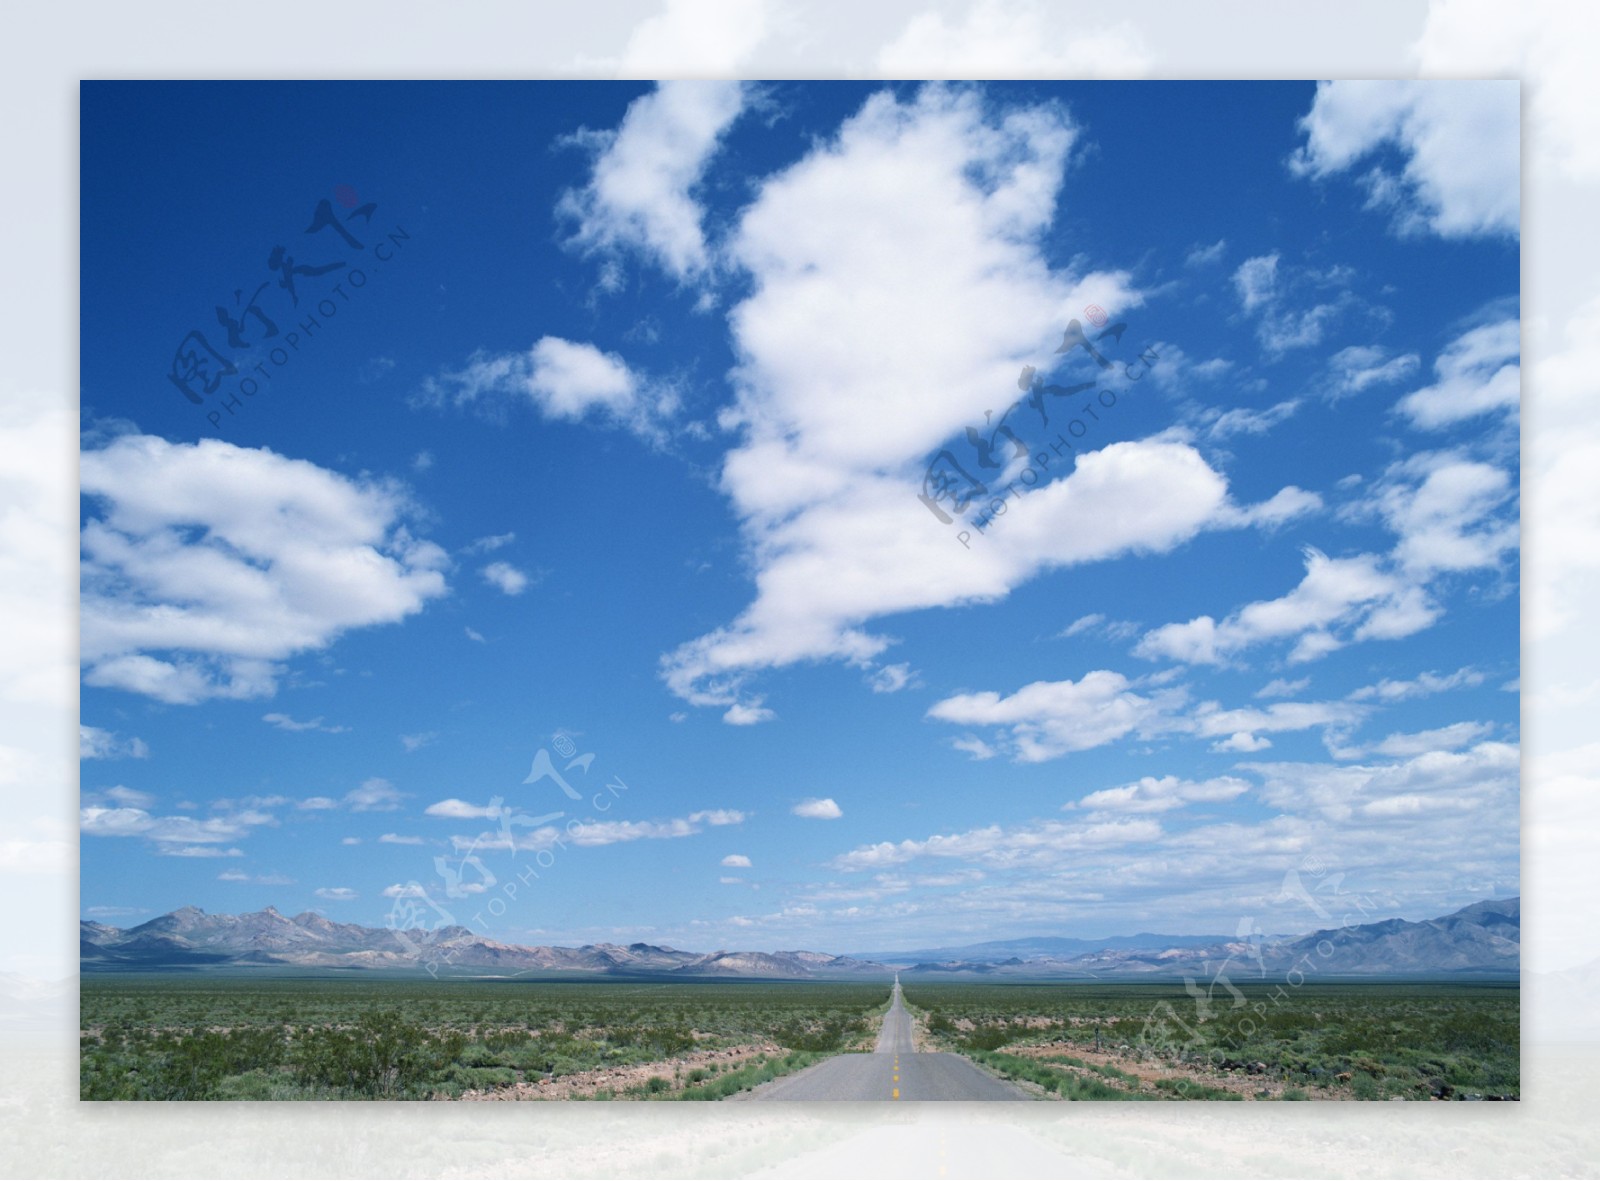 公路蓝天白云图片